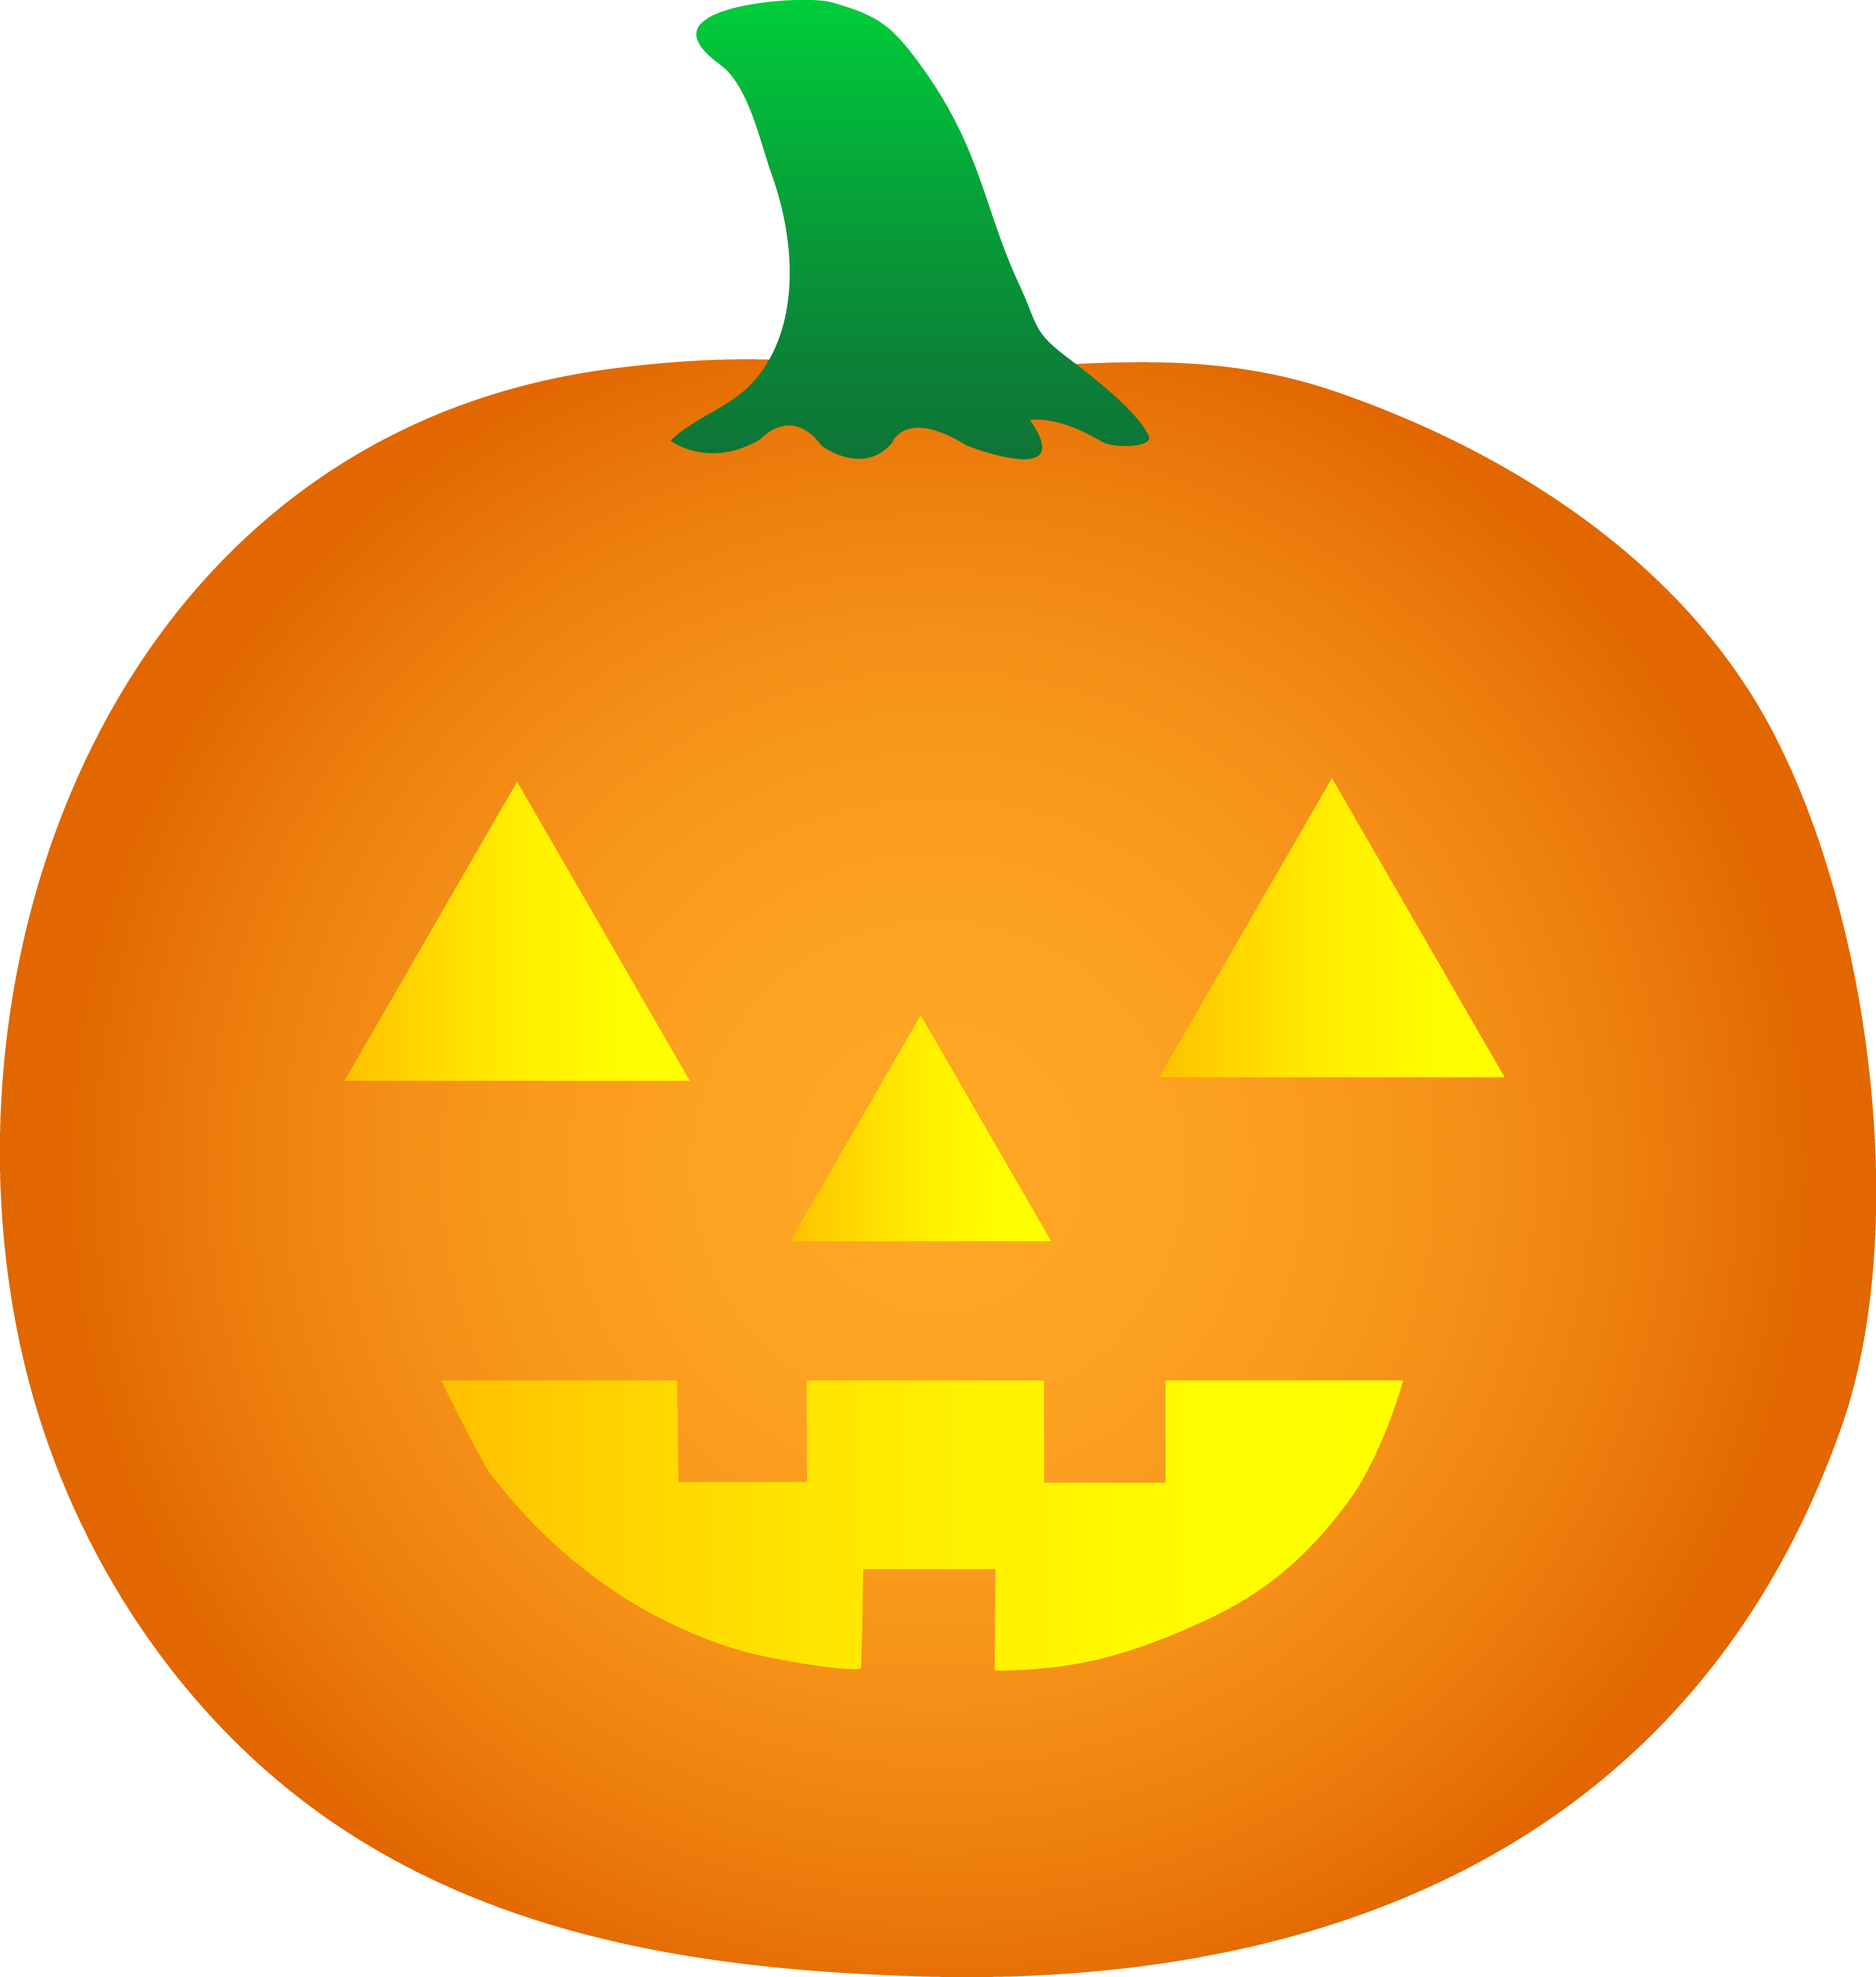 Halloween Pumpkin Cartoon | Free Download Clip Art | Free Clip Art ...